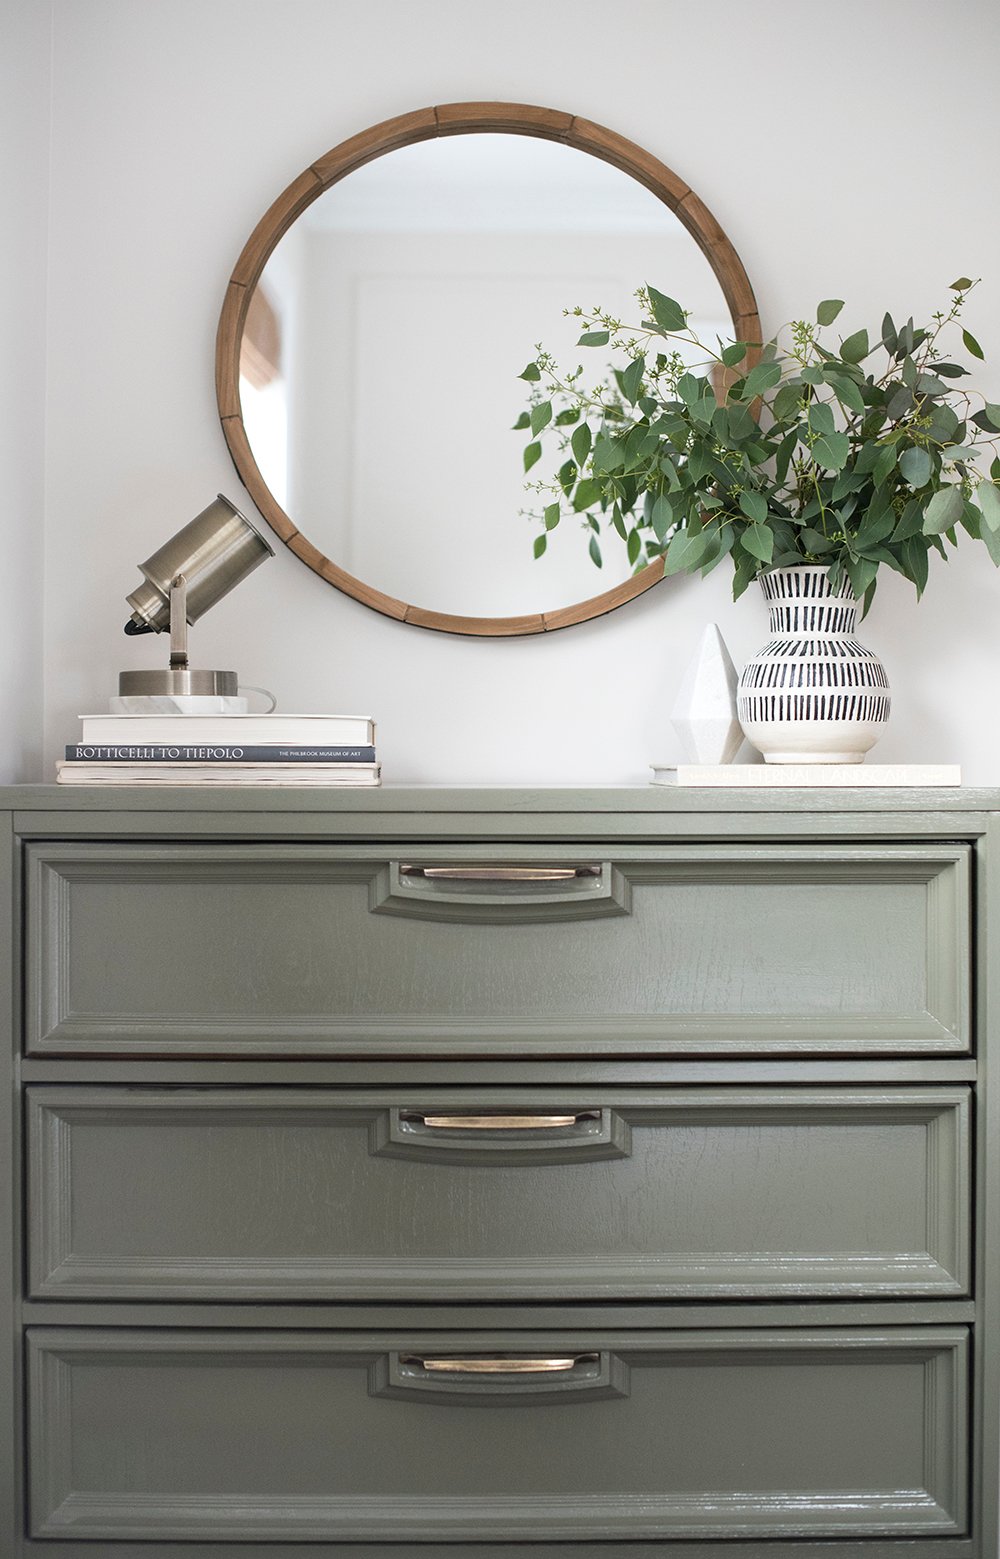 Round Mirror Over Bedroom Dresser, Silver Mirror Above Dresser